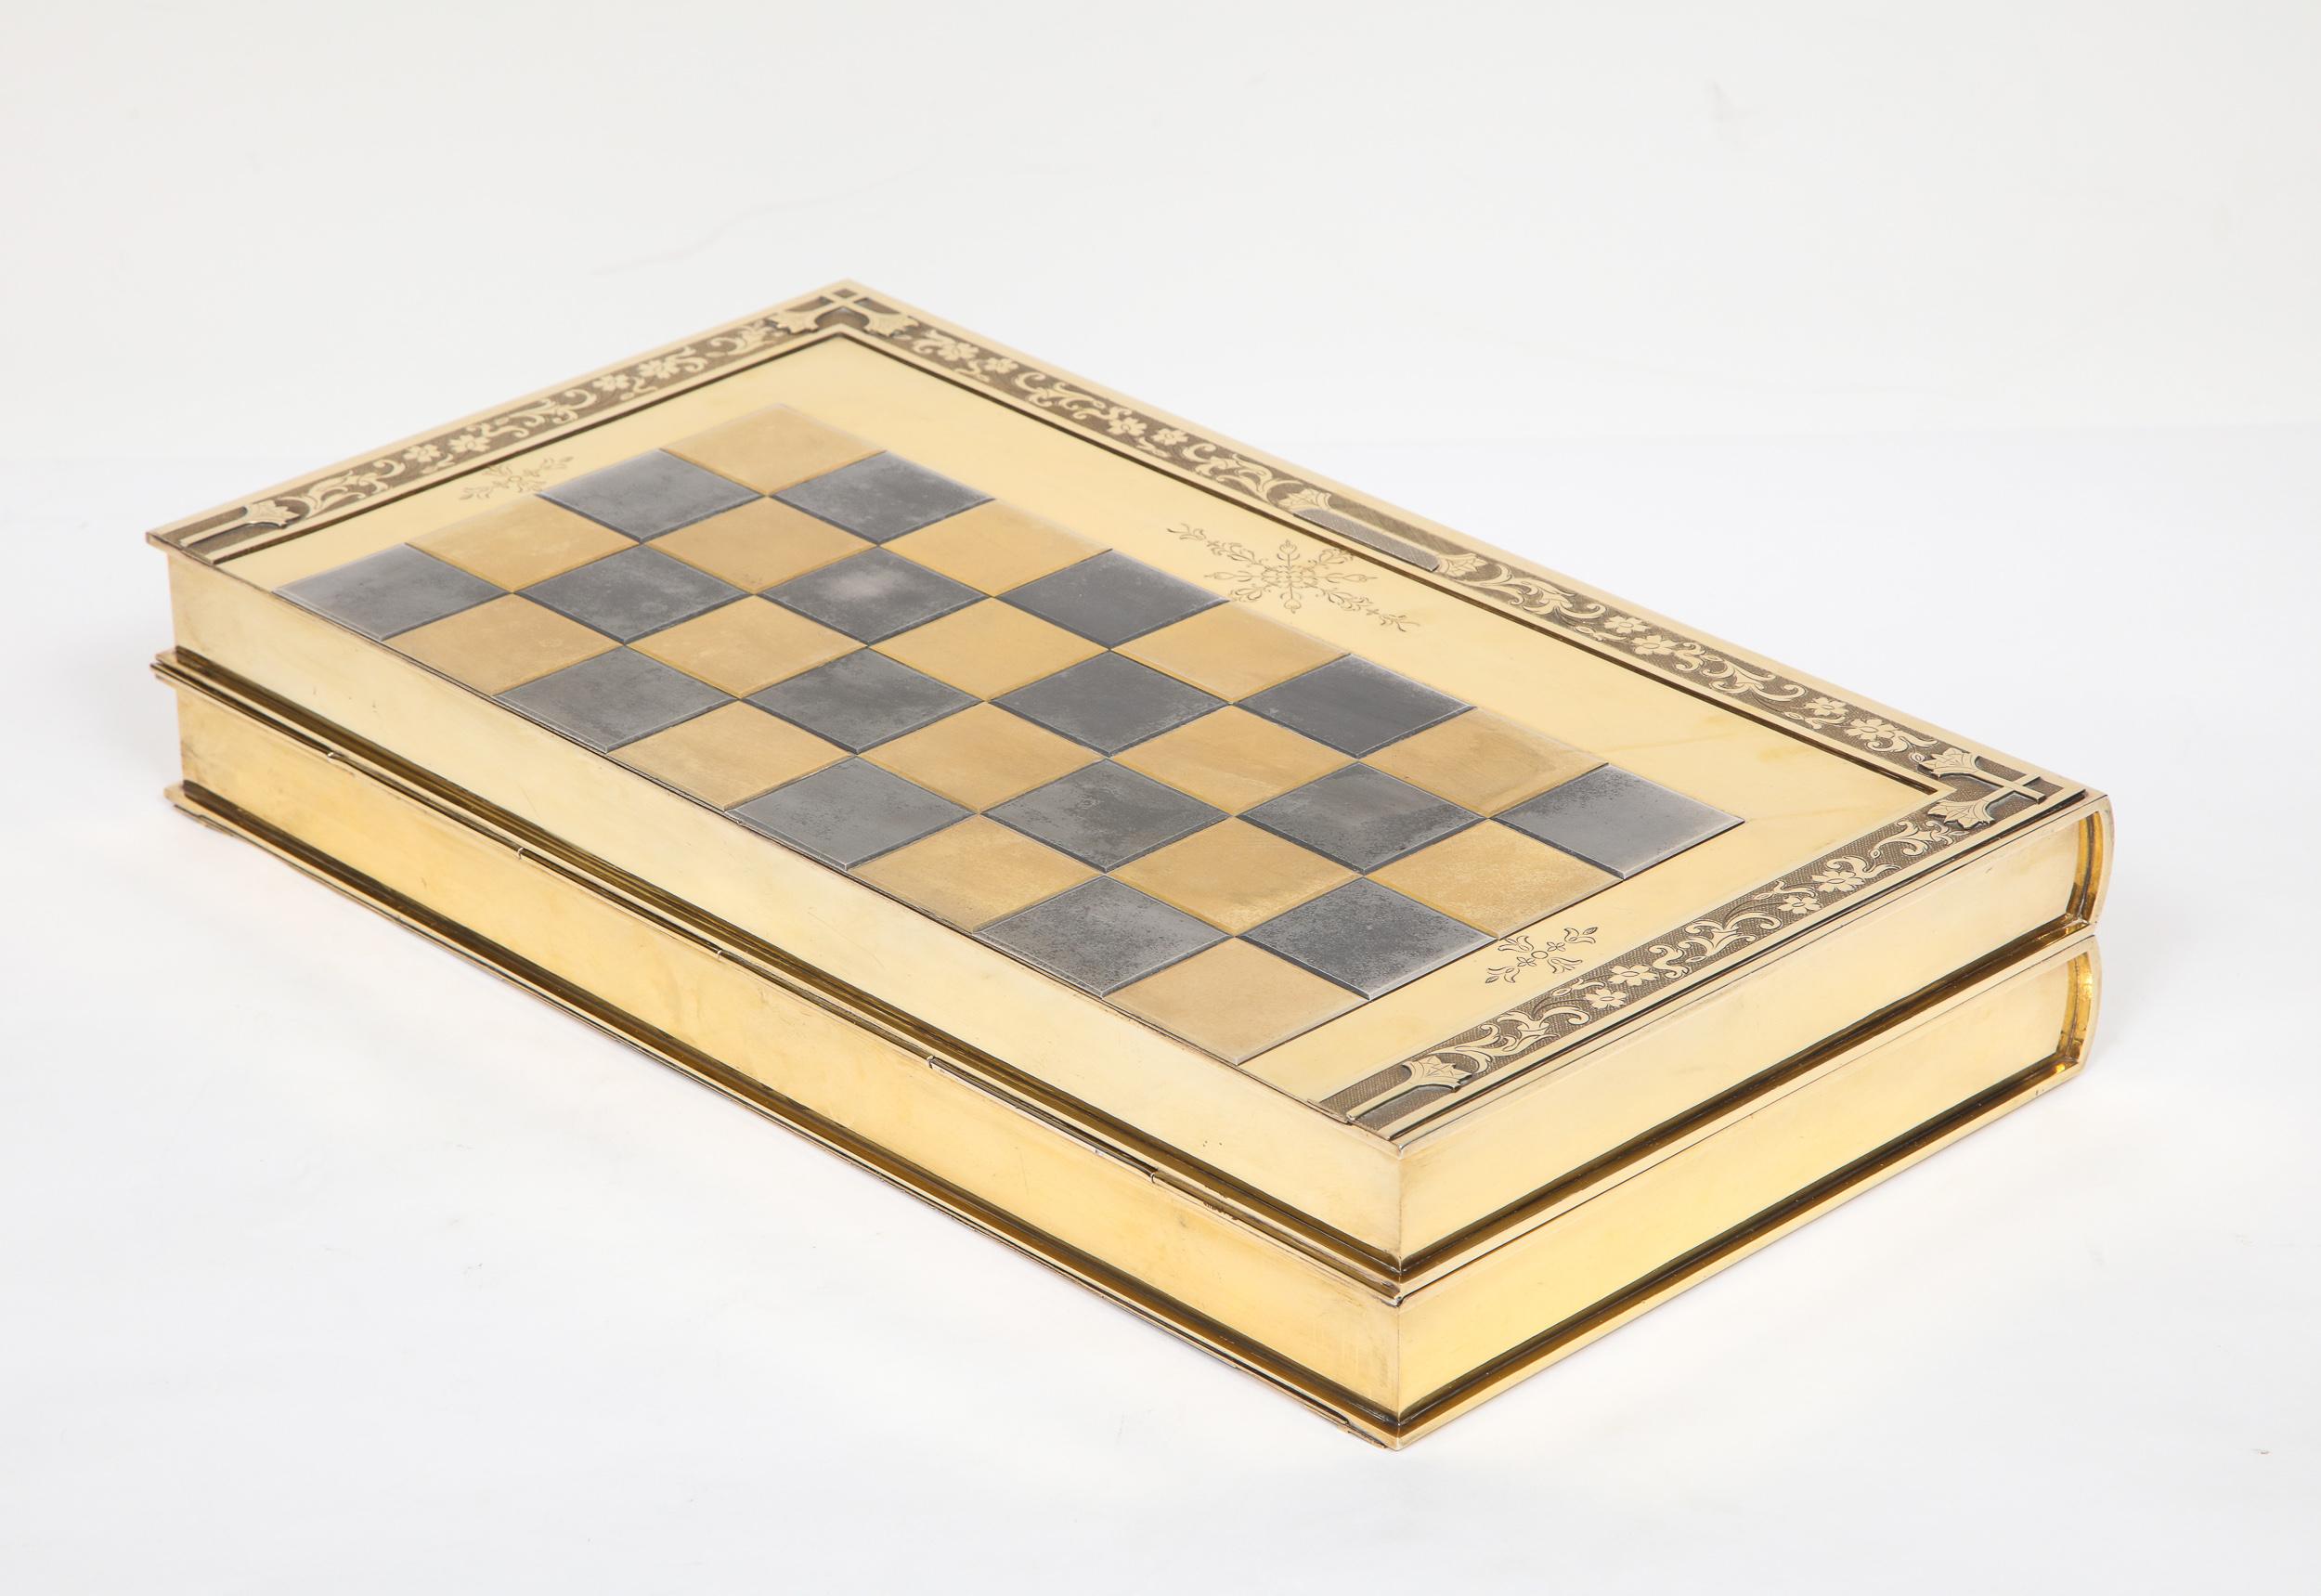 Rare English Silver-Gilt Book-Form Chess and Backgammon Game Board, circa 1976 For Sale 6